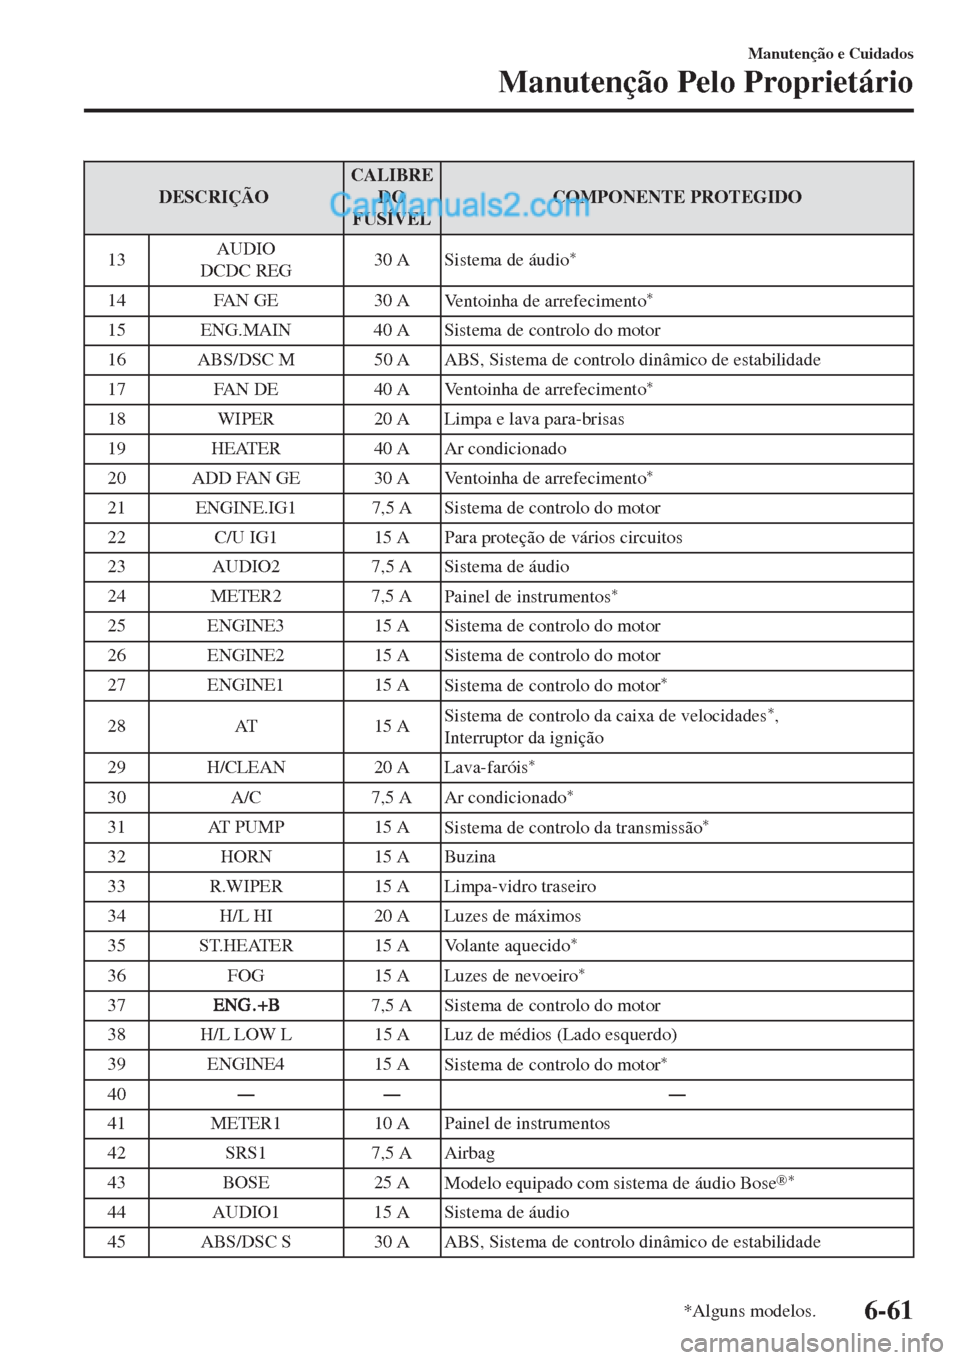 MAZDA MODEL CX-5 2017  Manual do proprietário (in Portuguese) DESCRIÇÃOCALIBRE
DO
FUSÍVELCOMPONENTE PROTEGIDO
13AUDIO
DCDC REG30 A
Sistema de áudio
*
14 FAN GE 30 A
Ventoinha de arrefecimento*
15 ENG.MAIN 40 A Sistema de controlo do motor
16 ABS/DSC M 50 A A